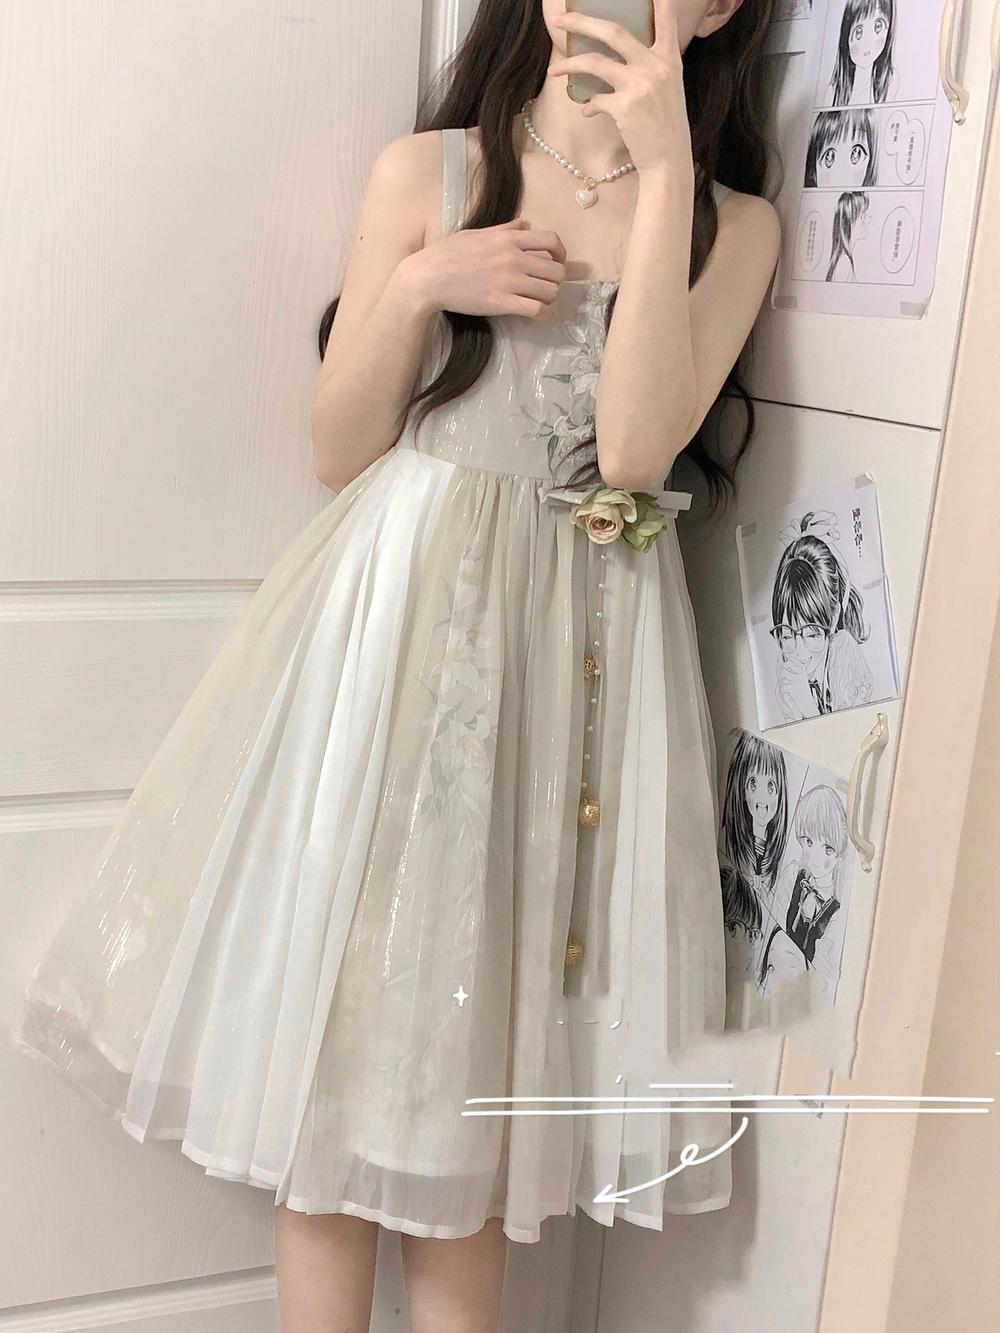 Cornfield Lolita~Wind Singing Lily~Qi Lolita Embroidered Dress Suit dress S 